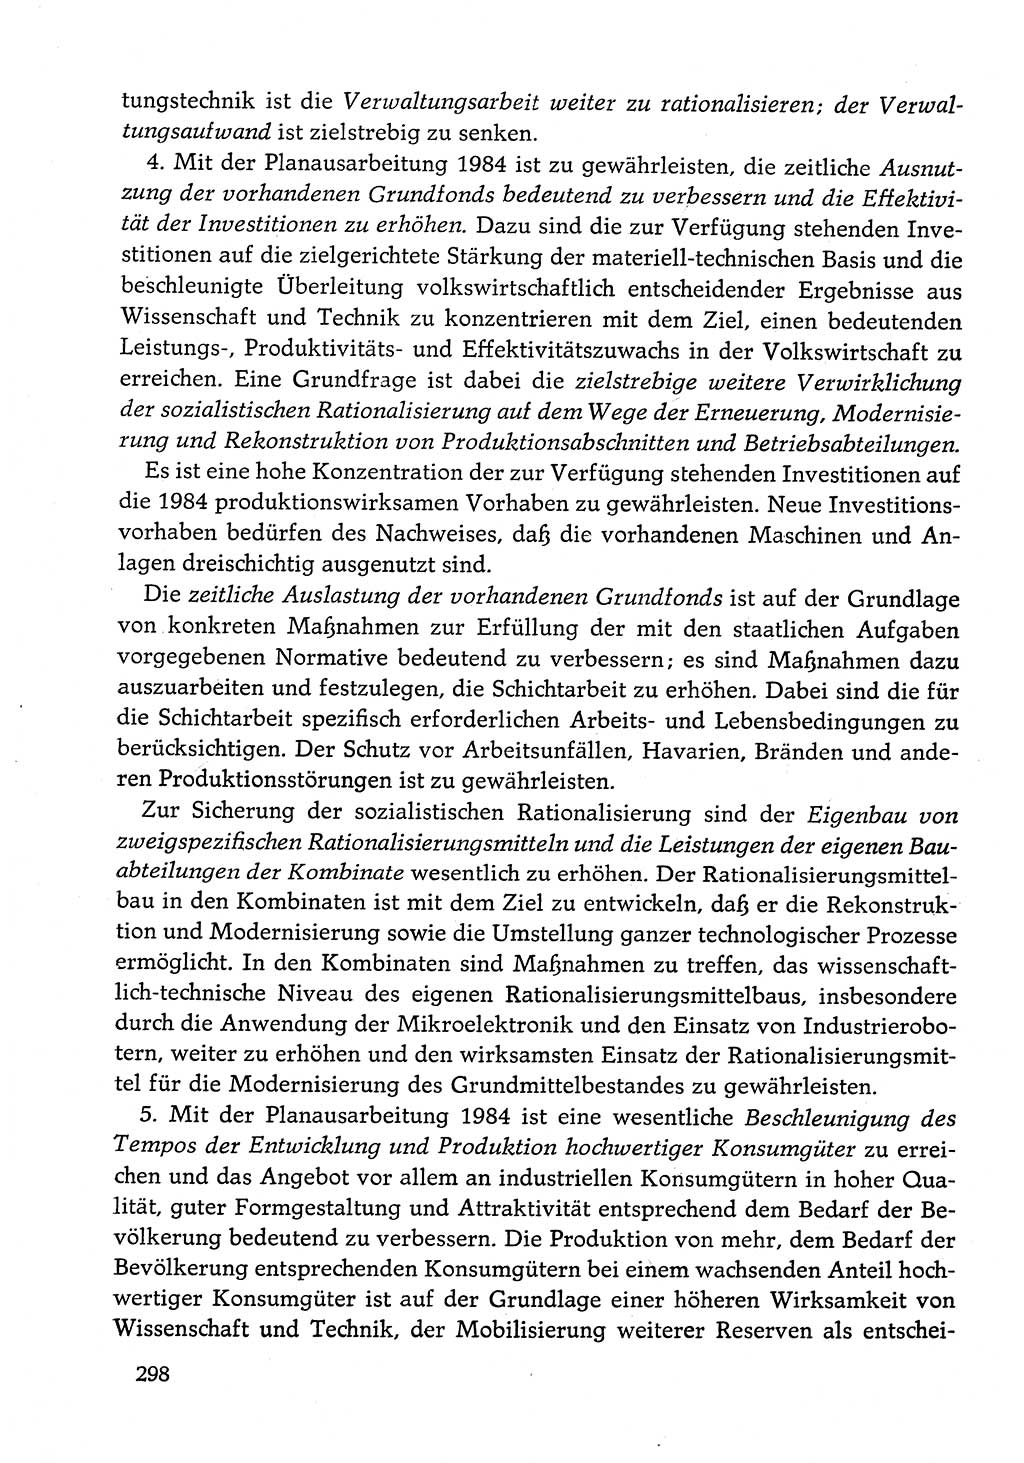 Dokumente der Sozialistischen Einheitspartei Deutschlands (SED) [Deutsche Demokratische Republik (DDR)] 1982-1983, Seite 298 (Dok. SED DDR 1982-1983, S. 298)